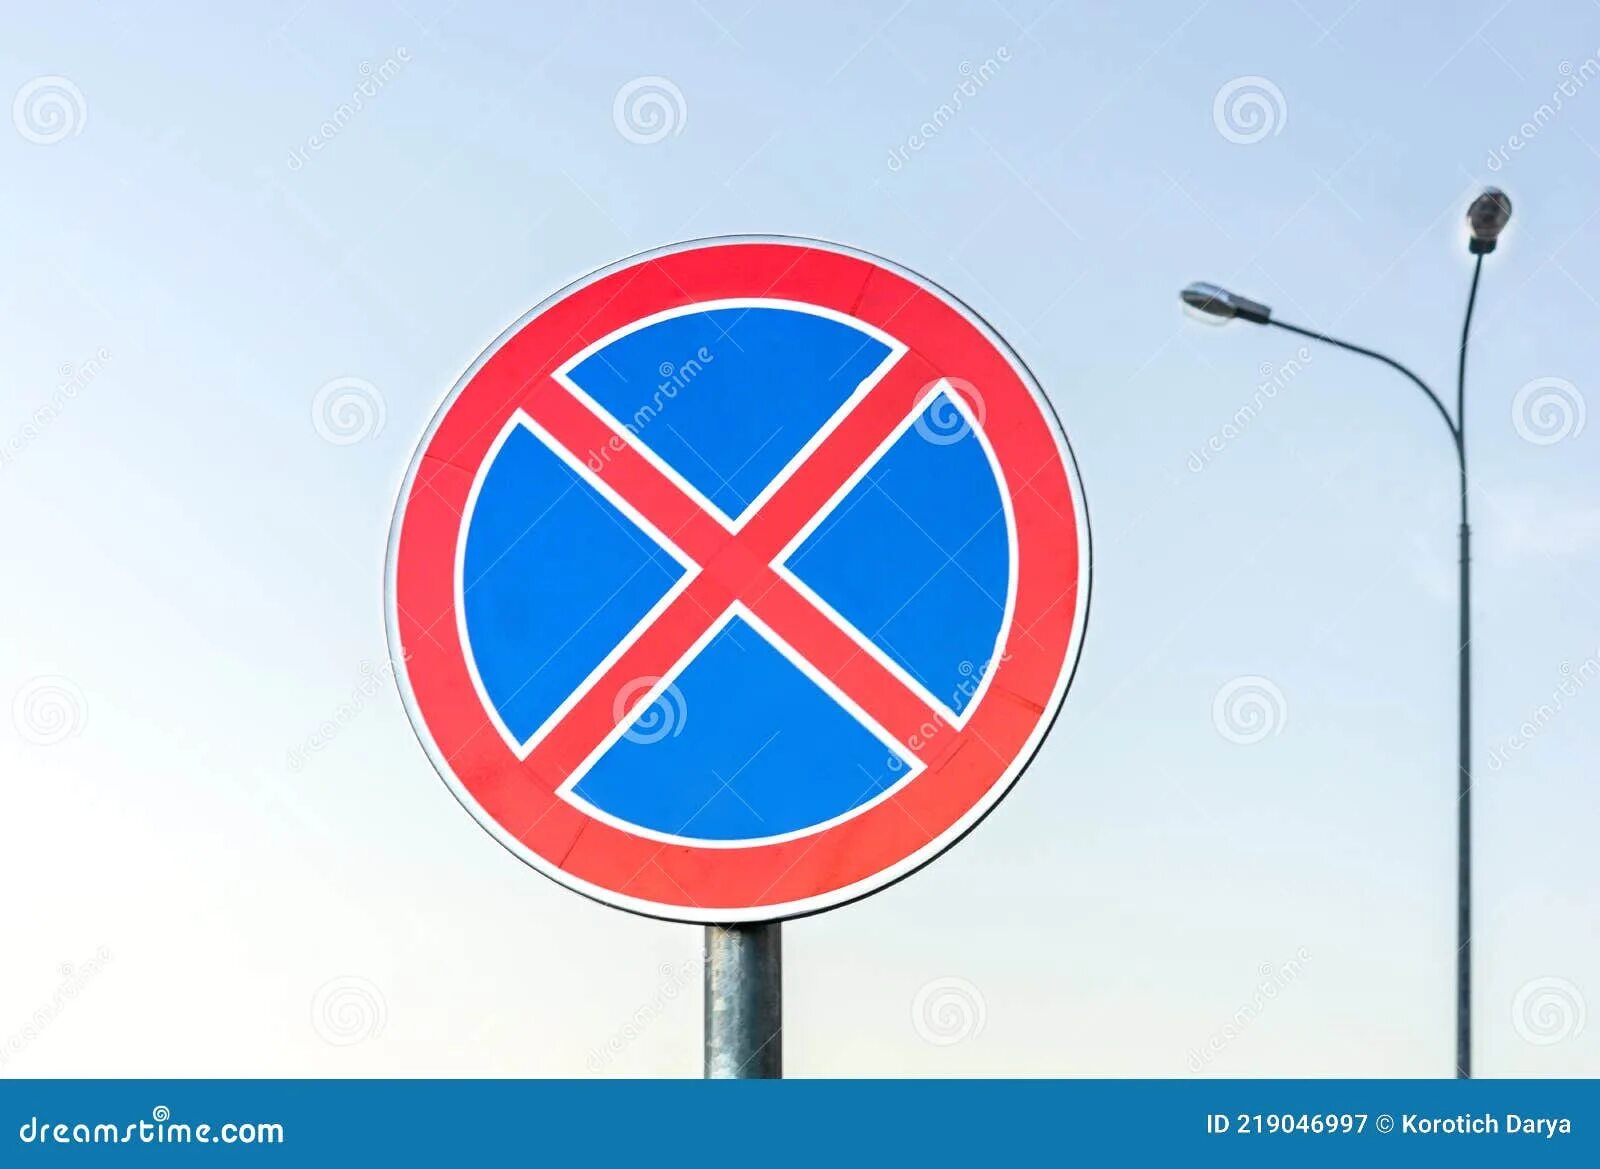 Знак красный круг с крестом. Круглые дорожные знаки с крестом. Круглый знак с красным крестом. Круглый знак с красным крестом на синем фоне. Красный крест на синем фоне дорожный знак.